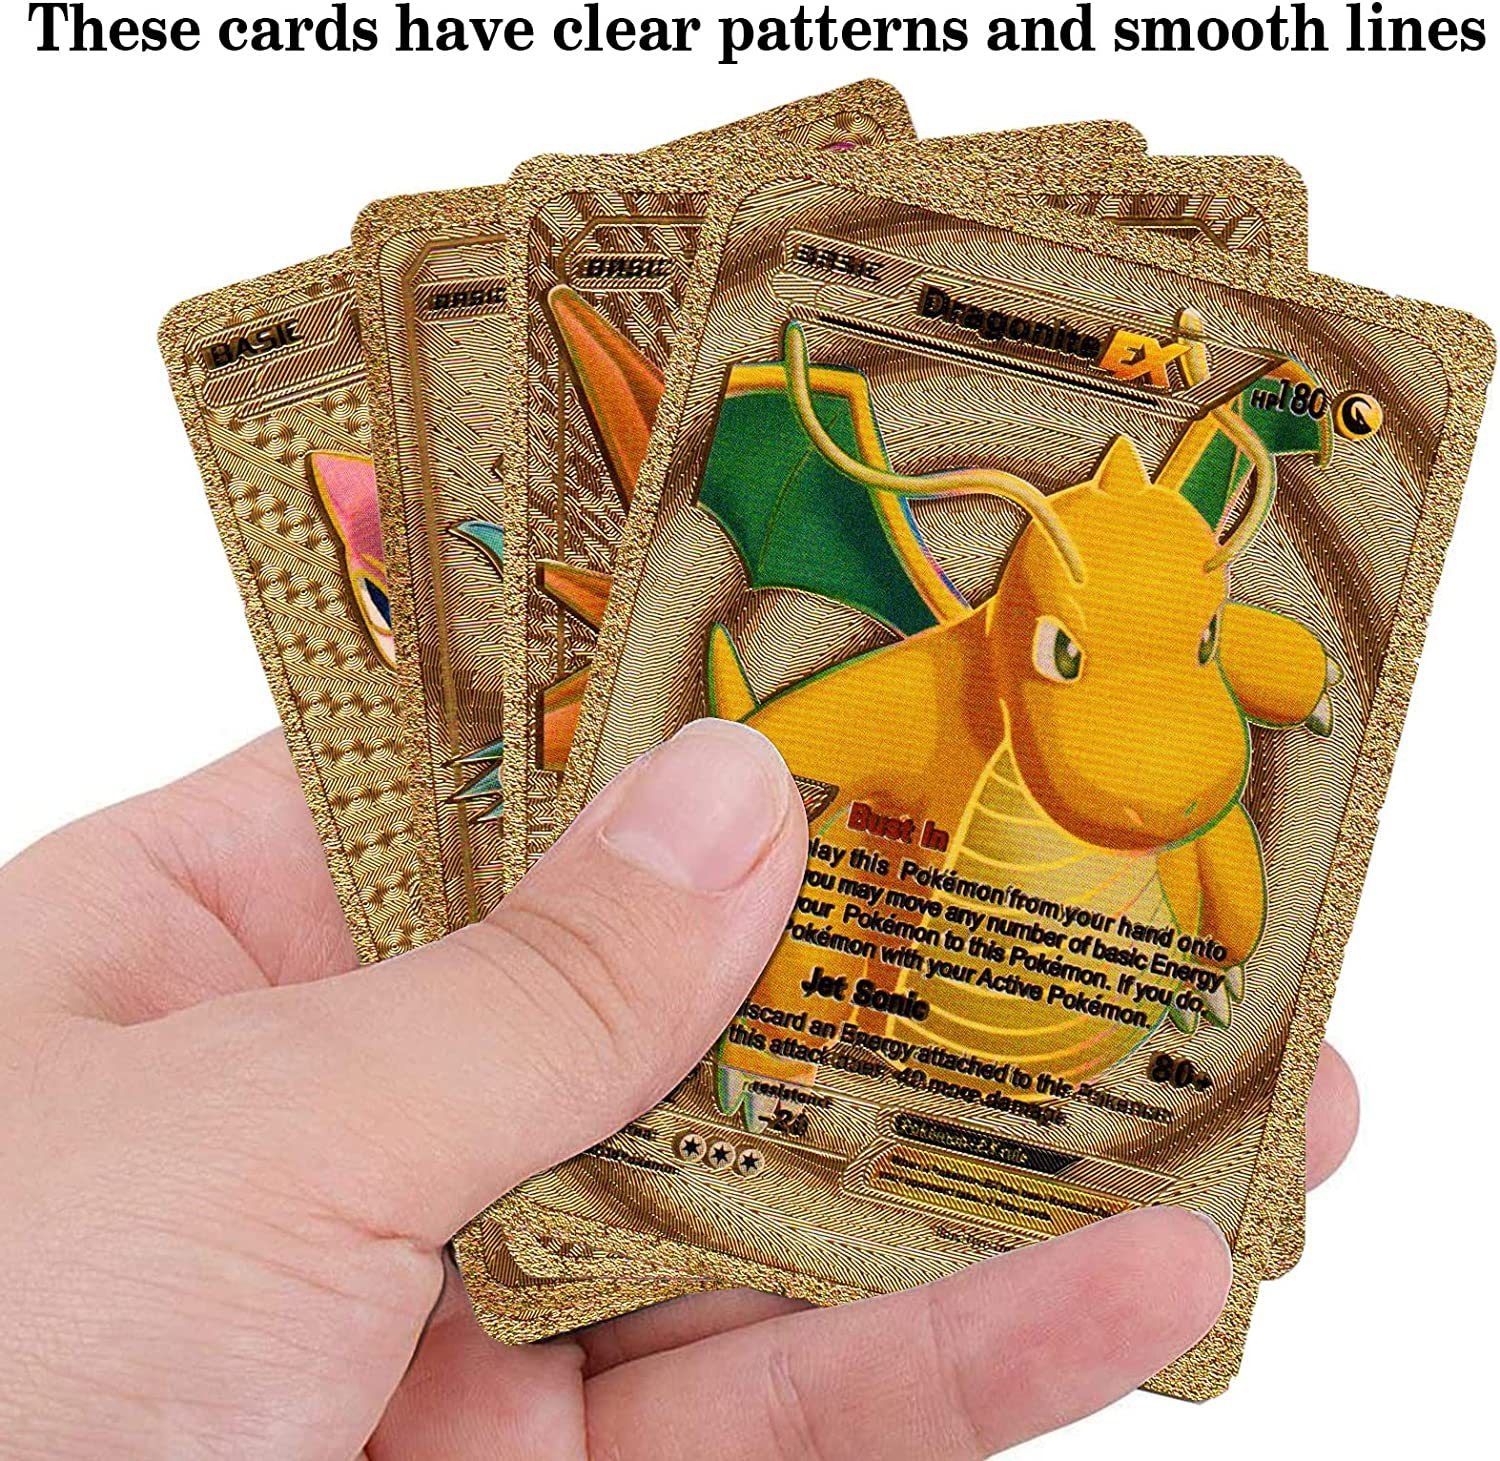 Vente en gros de cartes Pokémon